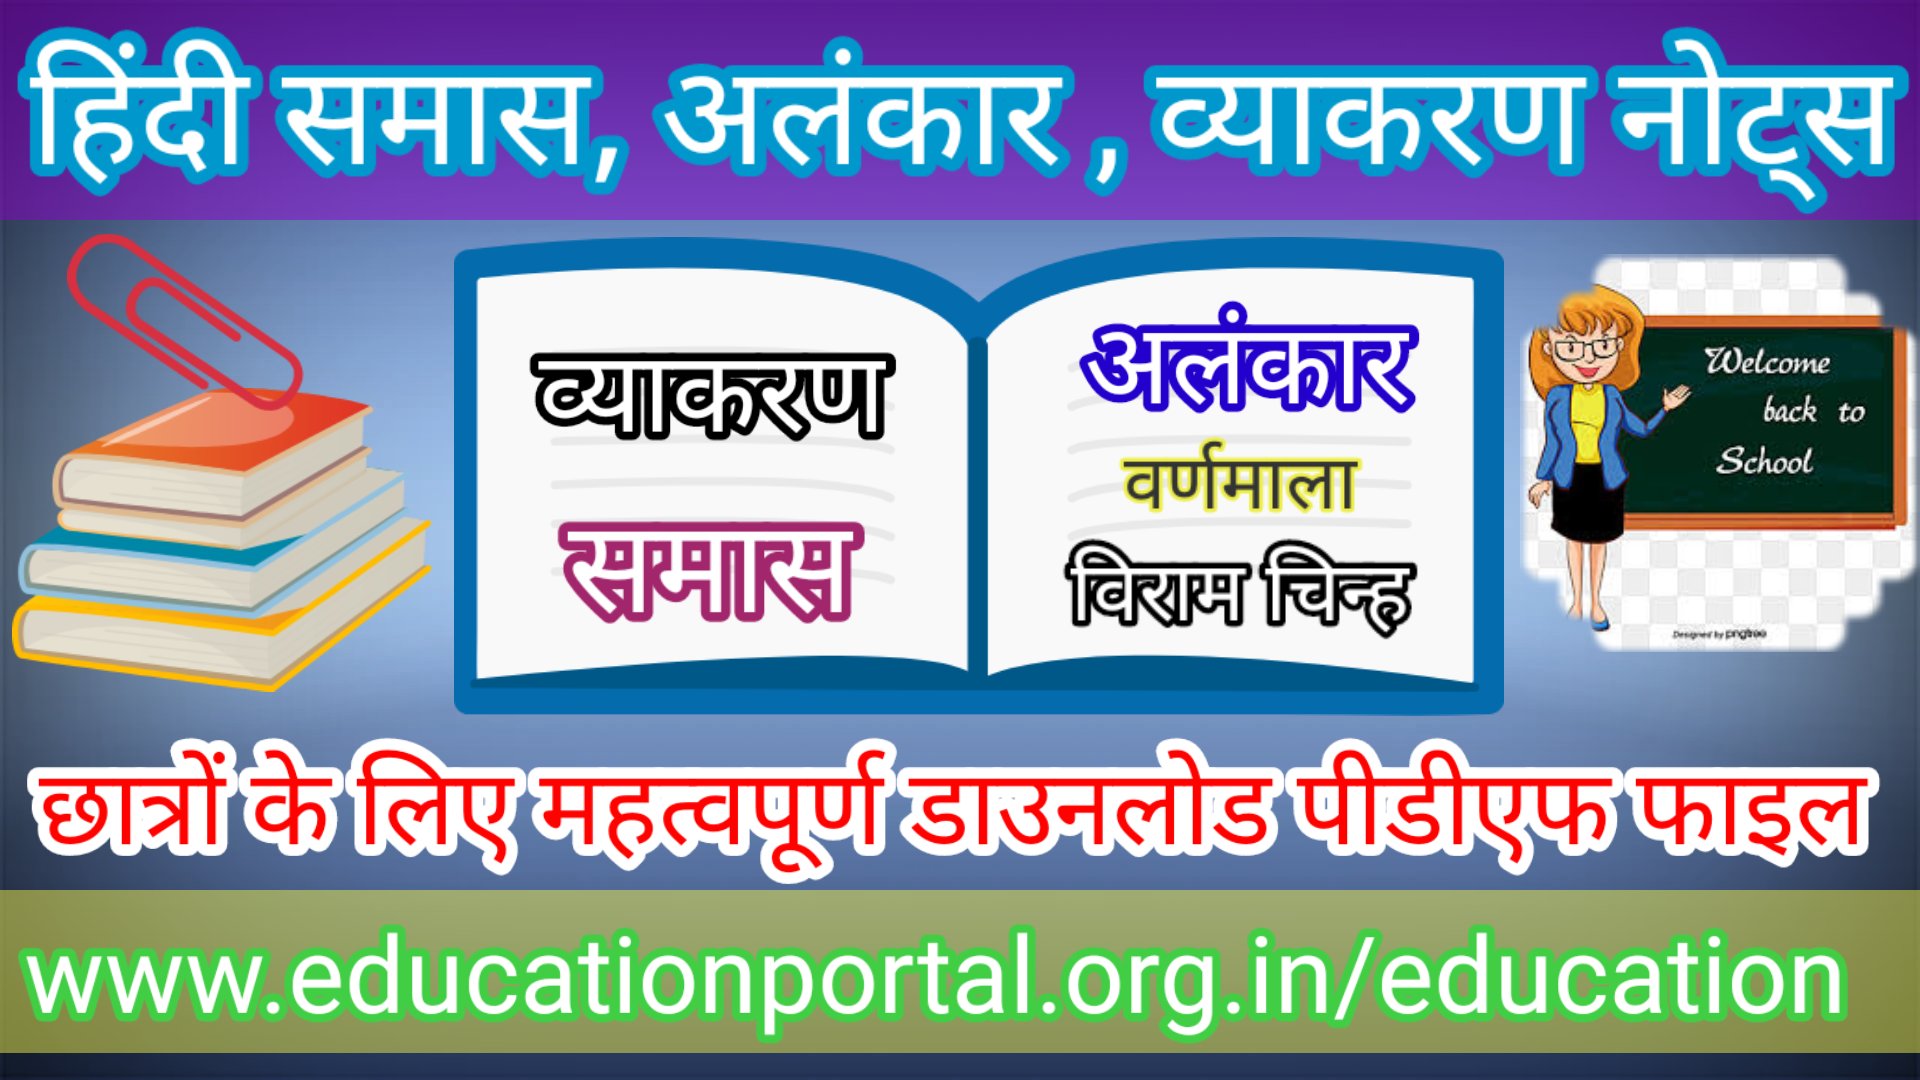 Hindi grammar notes pdf छात्रों के लिए परीक्षा उपयोगी हिंदी व्याकरण महत्वपूर्ण नोट्स समास वर्णमाला,अलंकार,विराम चिन्ह डाउनलोड पीडीएफ फाइल